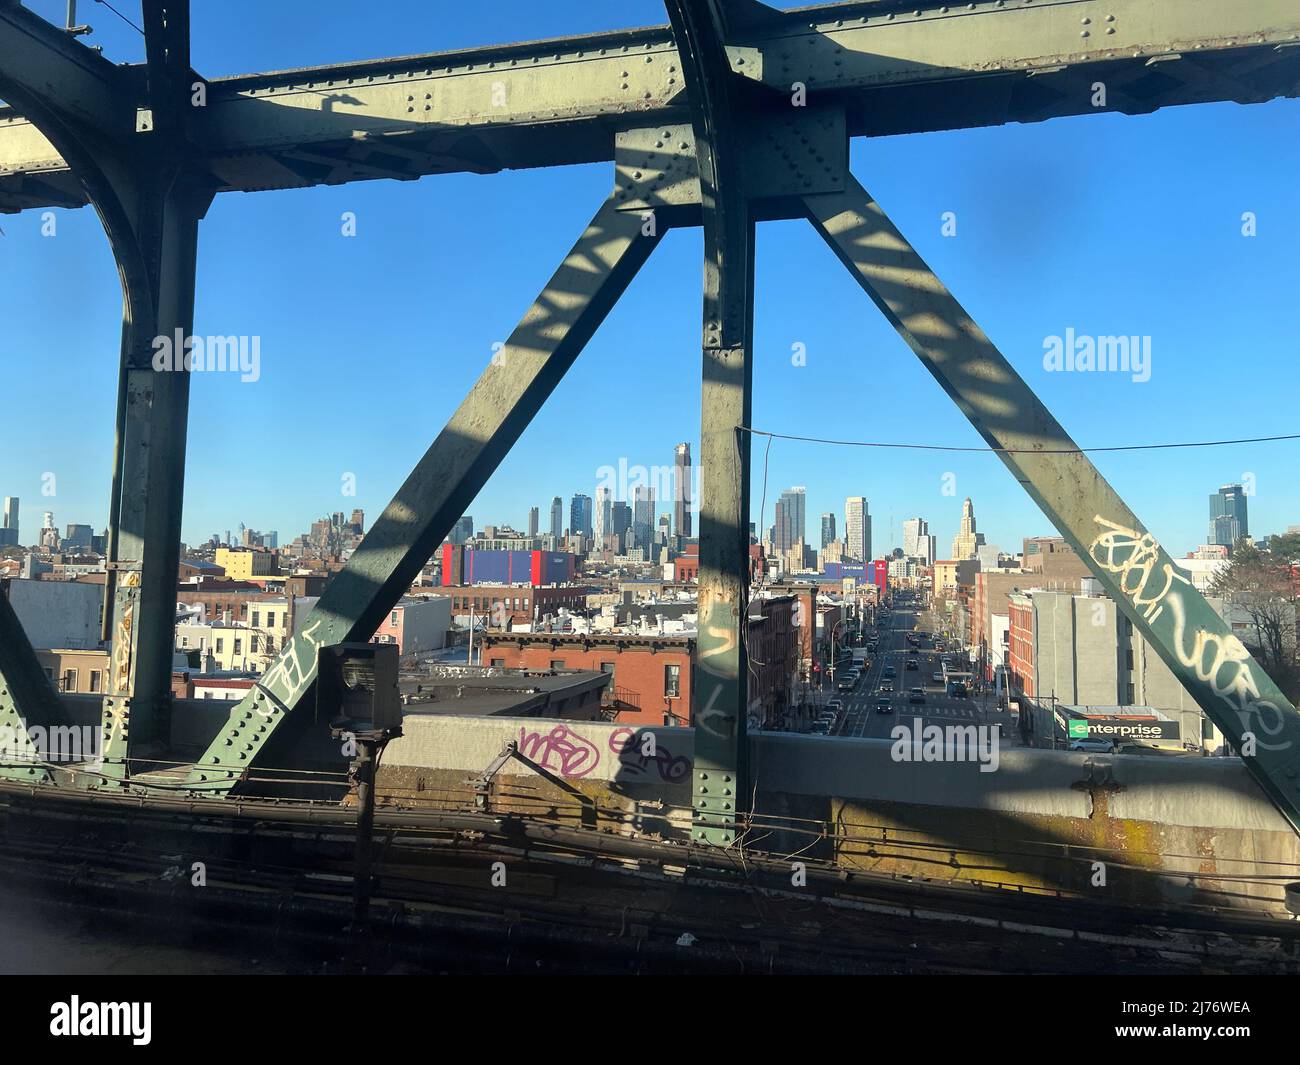 Die neueren Hochhäuser in der Innenstadt von Brooklyn, von der erhöhten Gleisstruktur der U-Bahn-Linie F Train aus gesehen, in Brooklyn, New York. Stockfoto